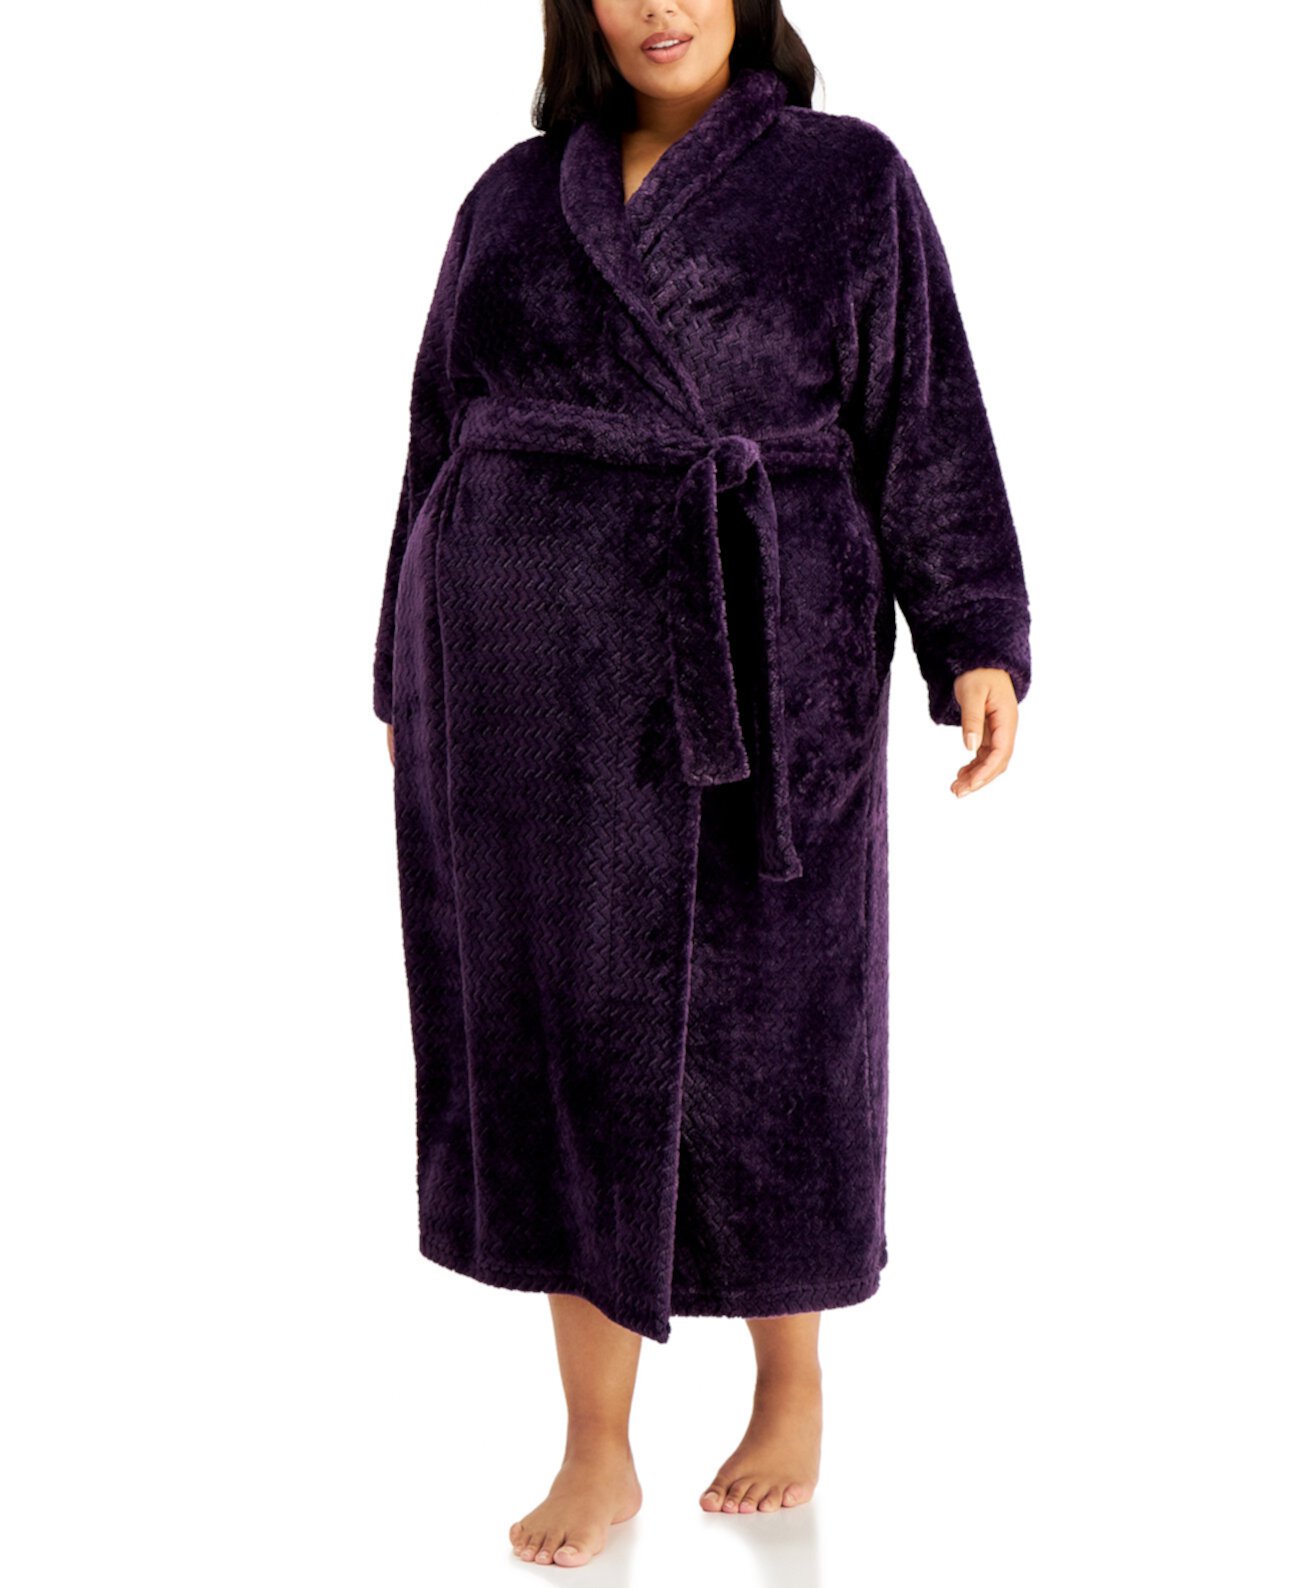 Уютный длинный зигзагообразный халат больших размеров, созданный для Macy's Charter Club